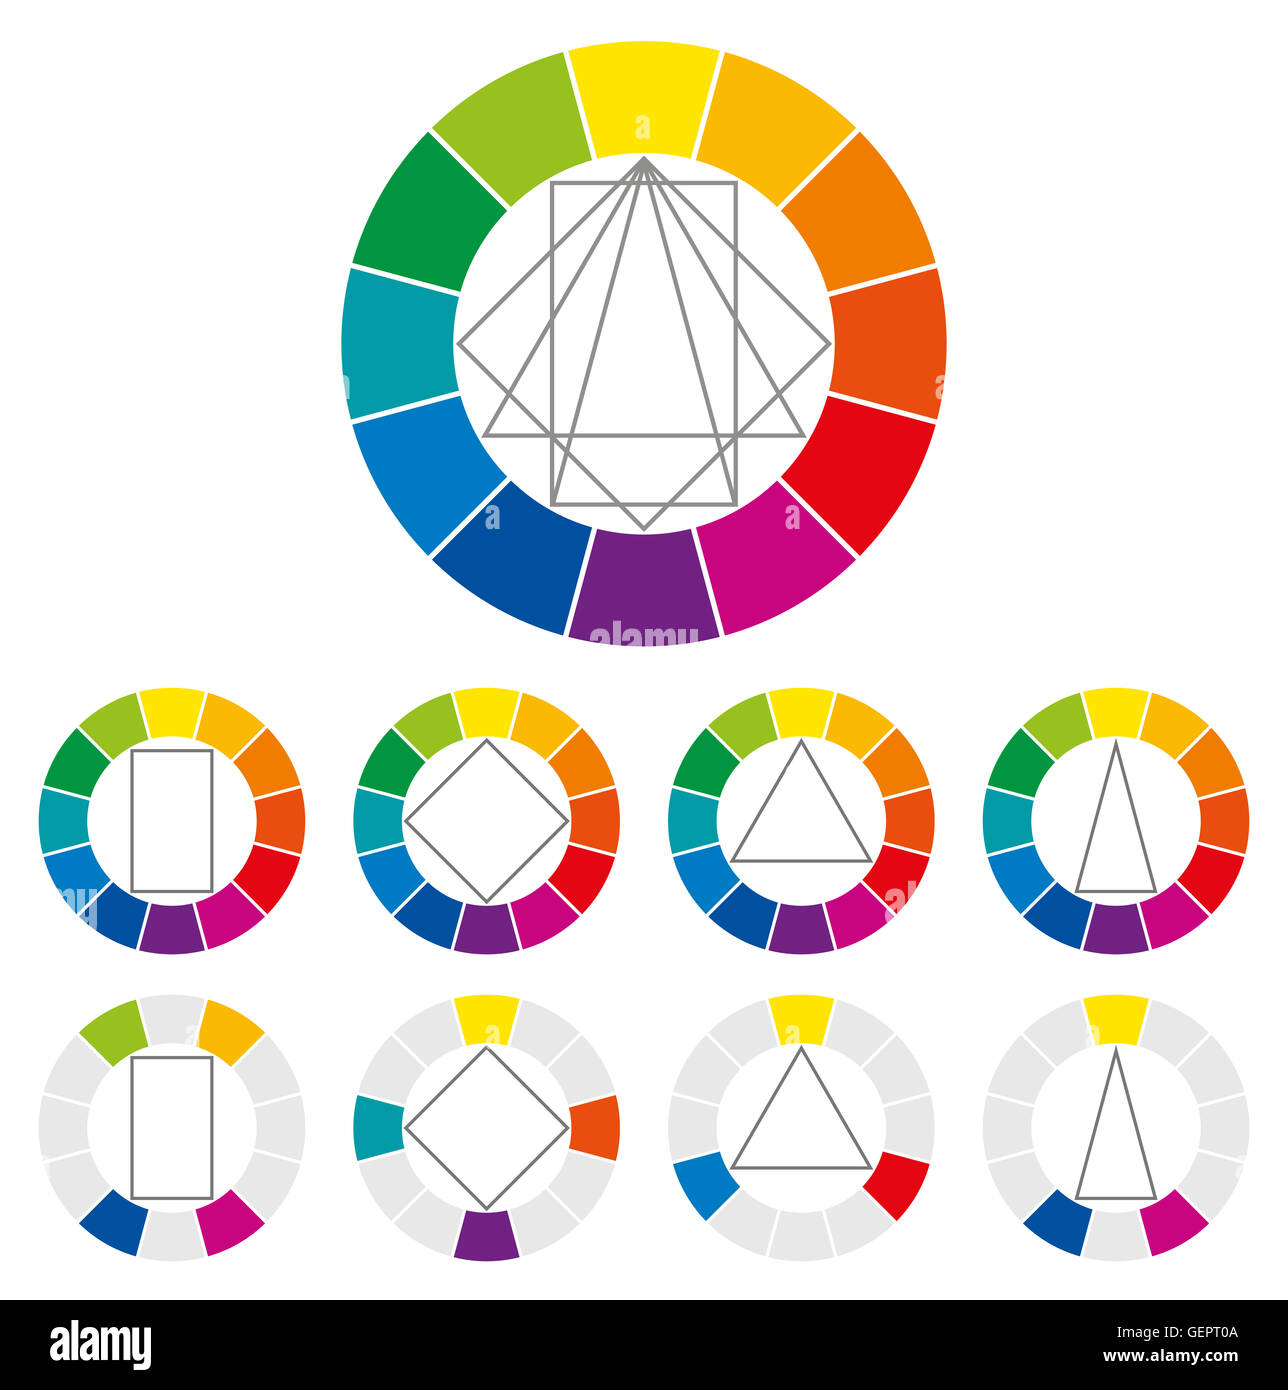 Farbrad mit vier verschiedener geometrischer Formen, die gedreht werden können, um in den Kreis, um mögliche harmonische Kombinationen zeigen. Stockfoto